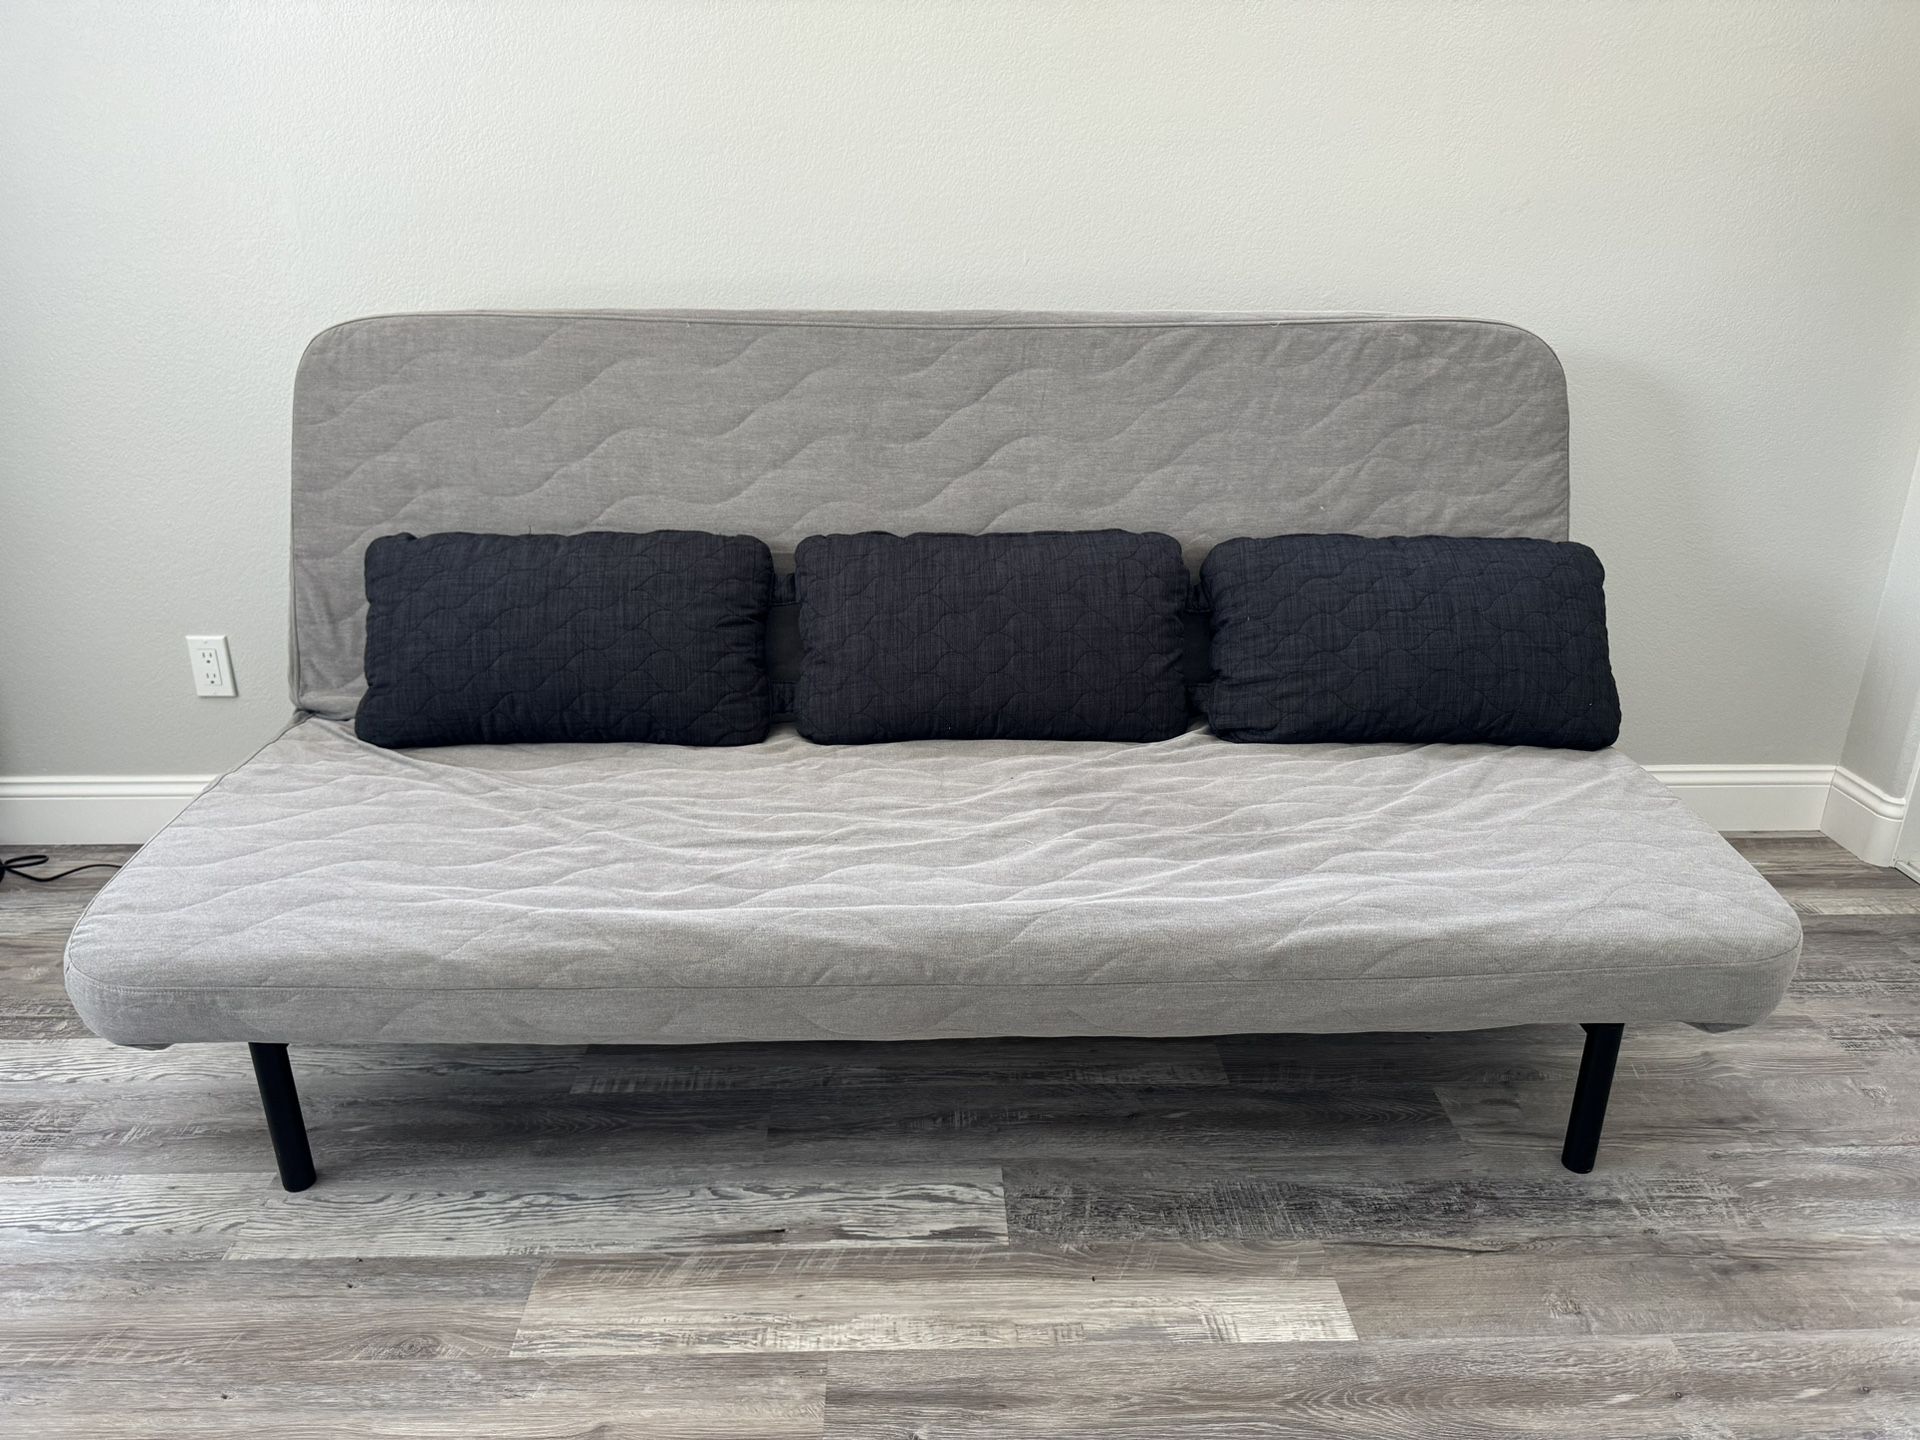 Gray Sleeper Sofa Futon with Black Pillows